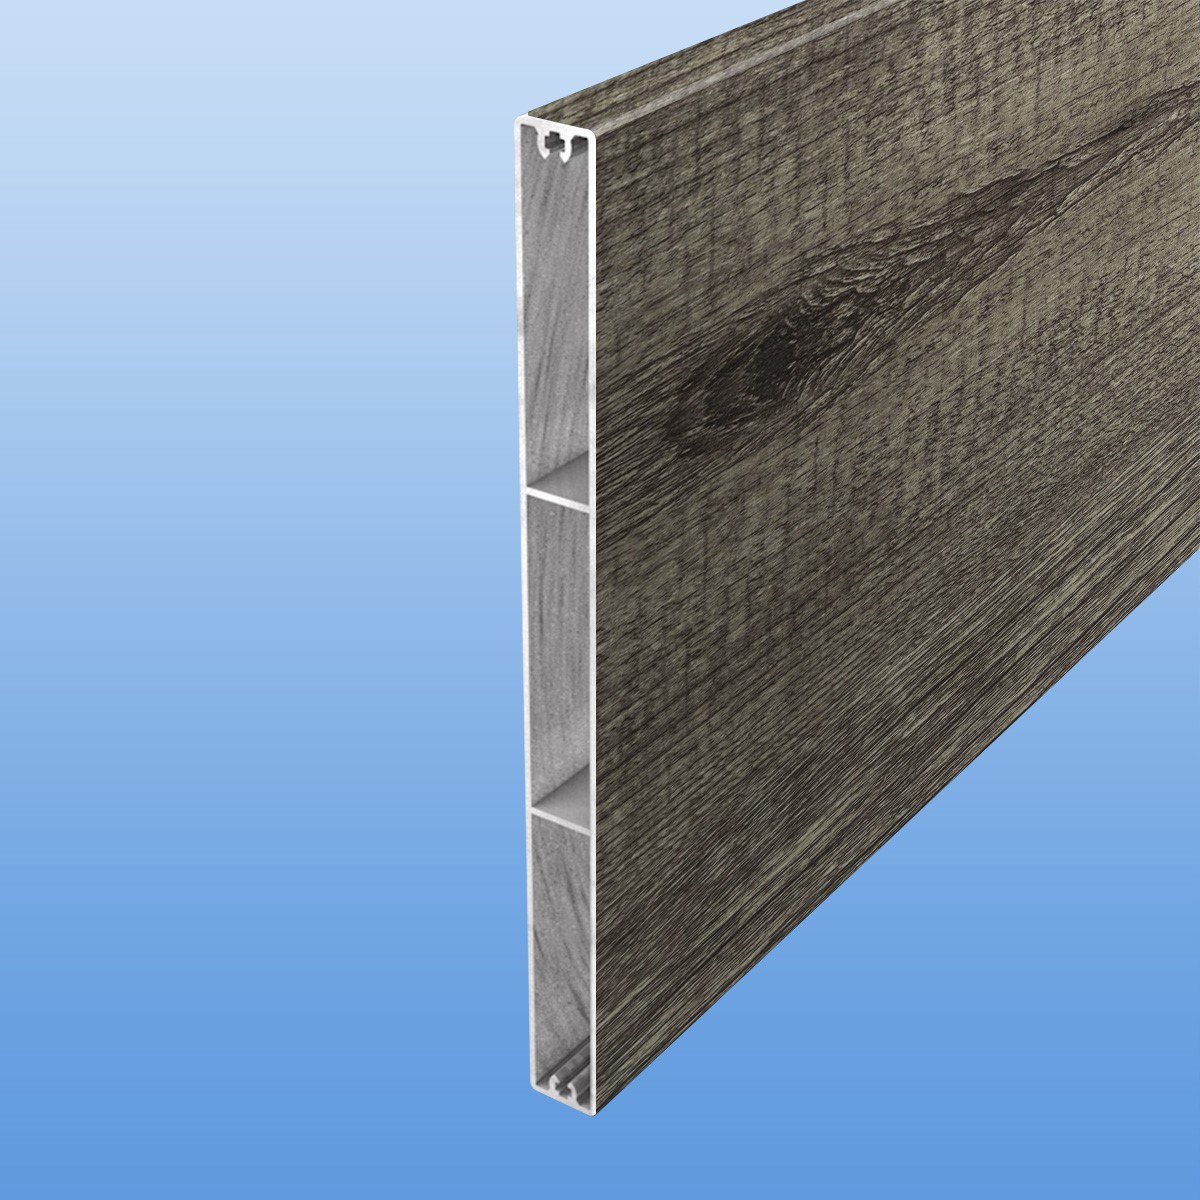 Zaunplanke aus Aluminium 200 mm breit in Holzoptik (Treibholz)